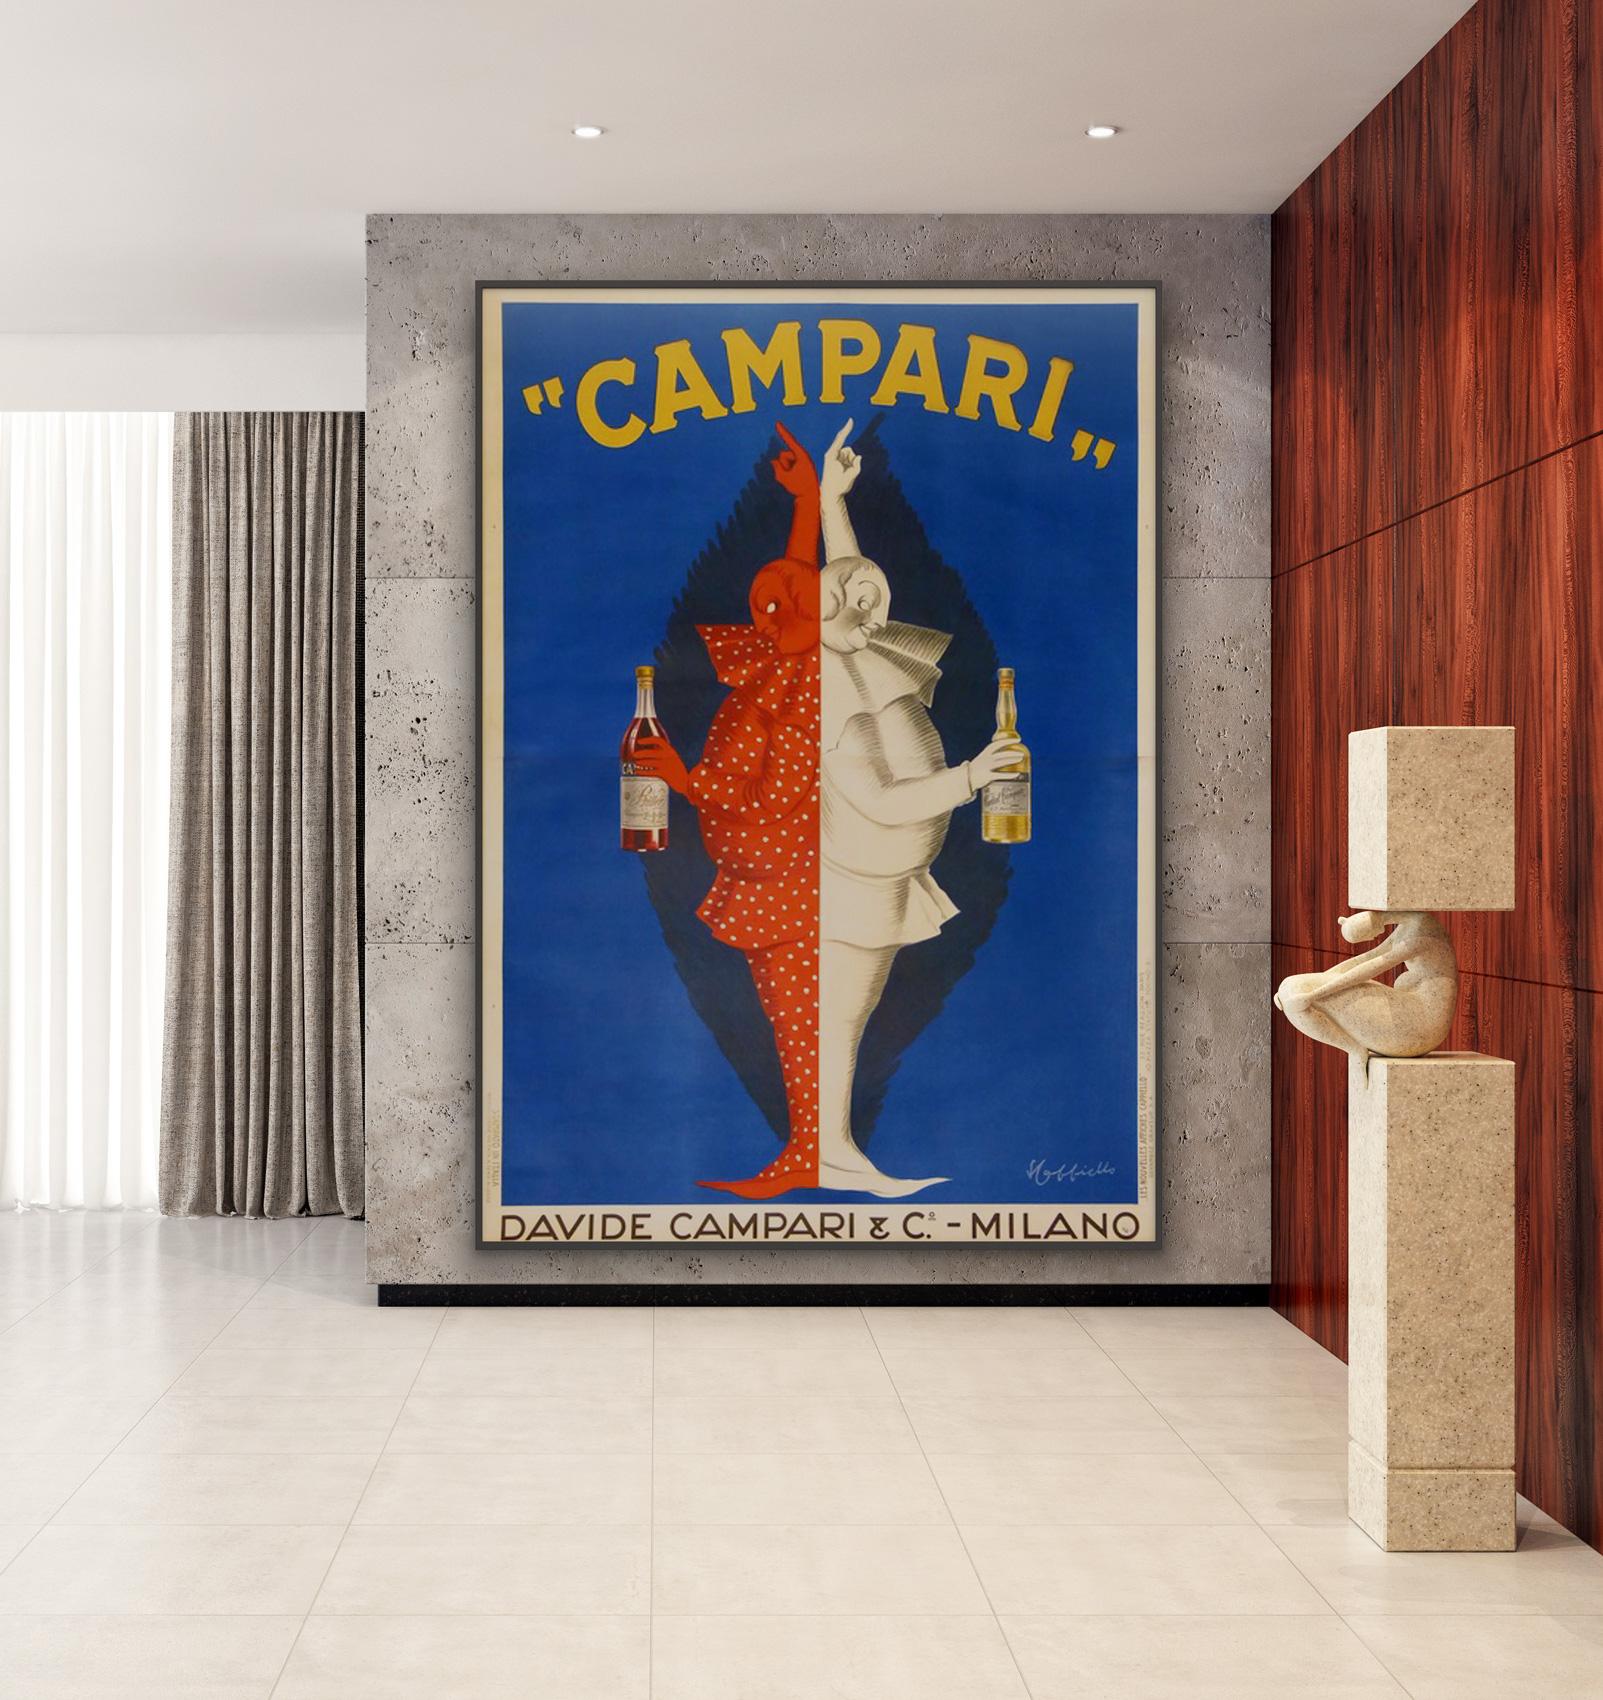 Fabuleuse affiche publicitaire italienne vintage de grande taille datant d'environ 1922 pour Campari. Nous adorons le design frappant de Leonetto Cappiello, qui donne un impact maximal à cette grande affiche. Pièce très rare et magnifique.

Leonetto